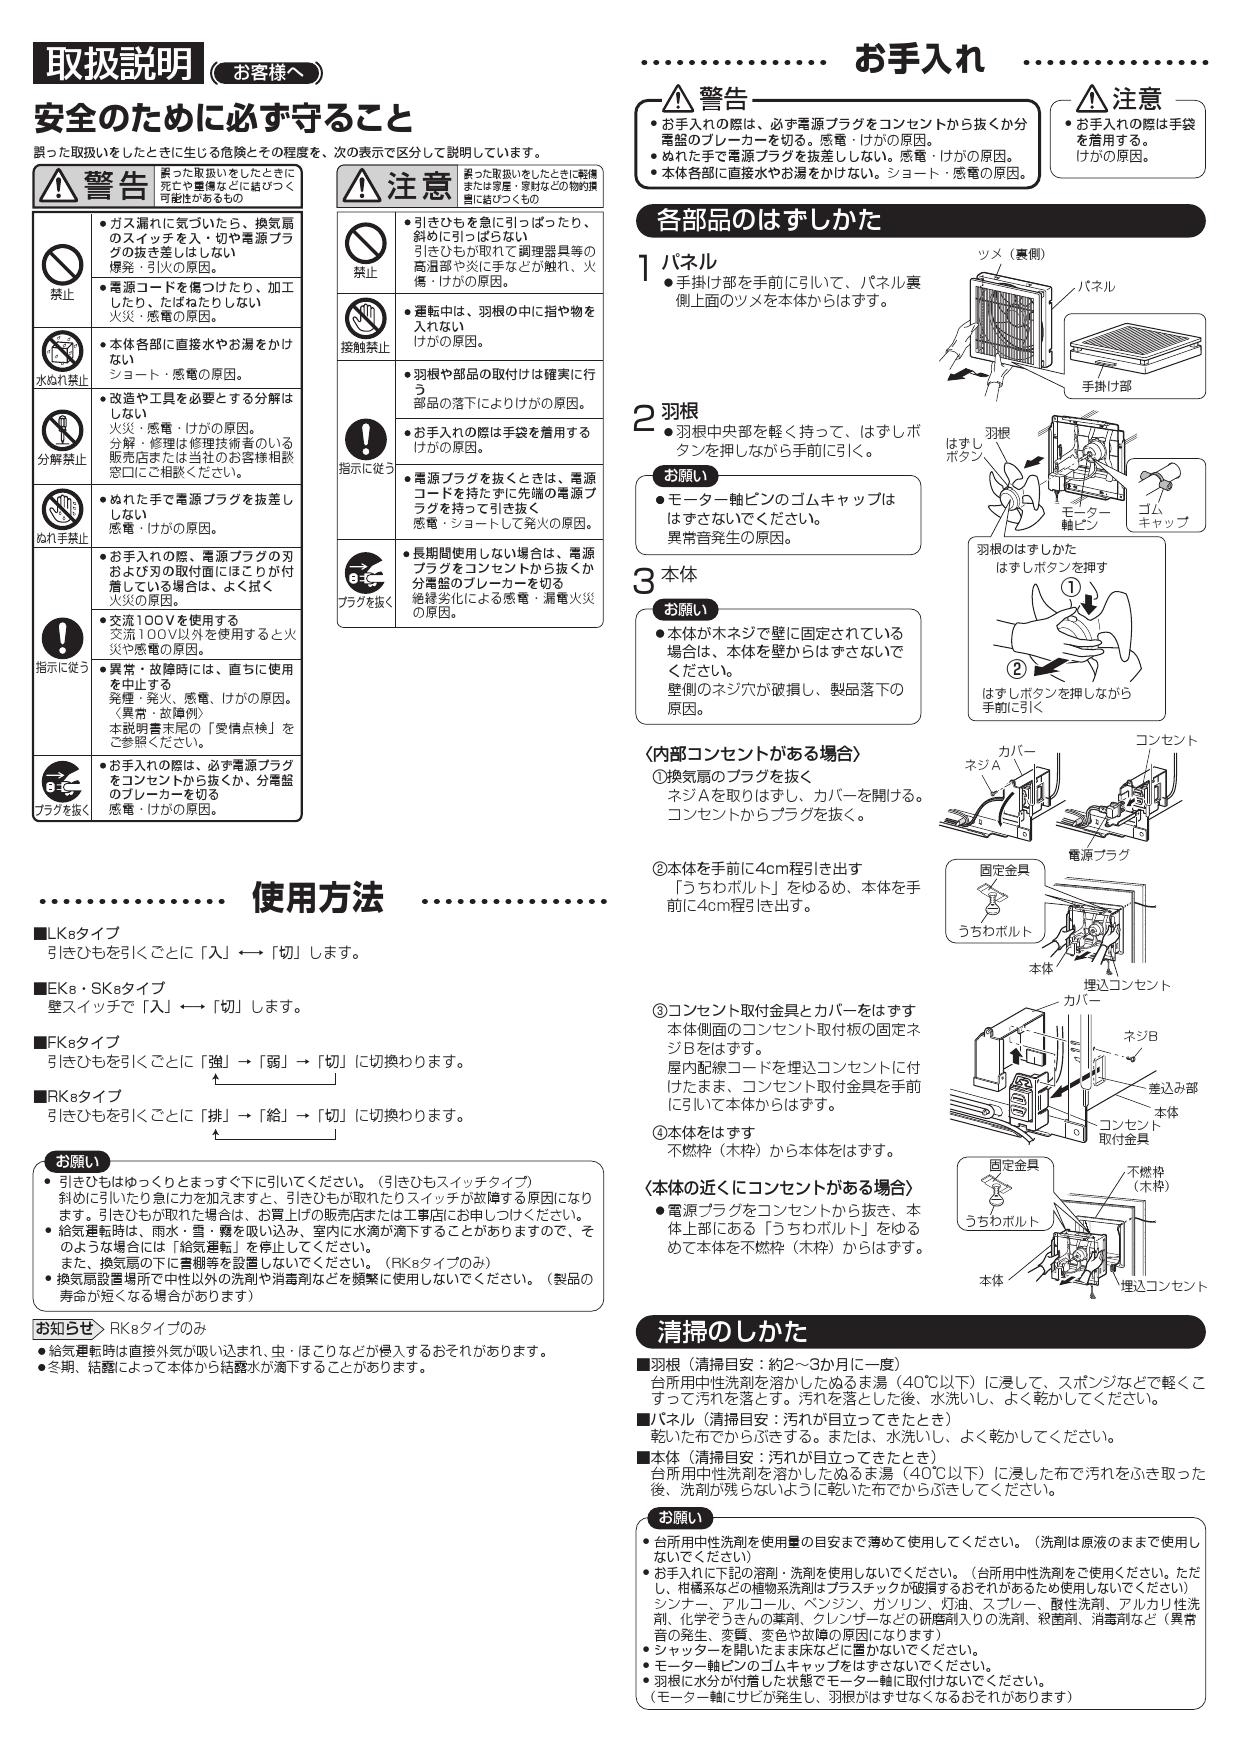 三菱電機 EX-30EK8-C取扱説明書 納入仕様図 | 通販 プロストア ダイレクト